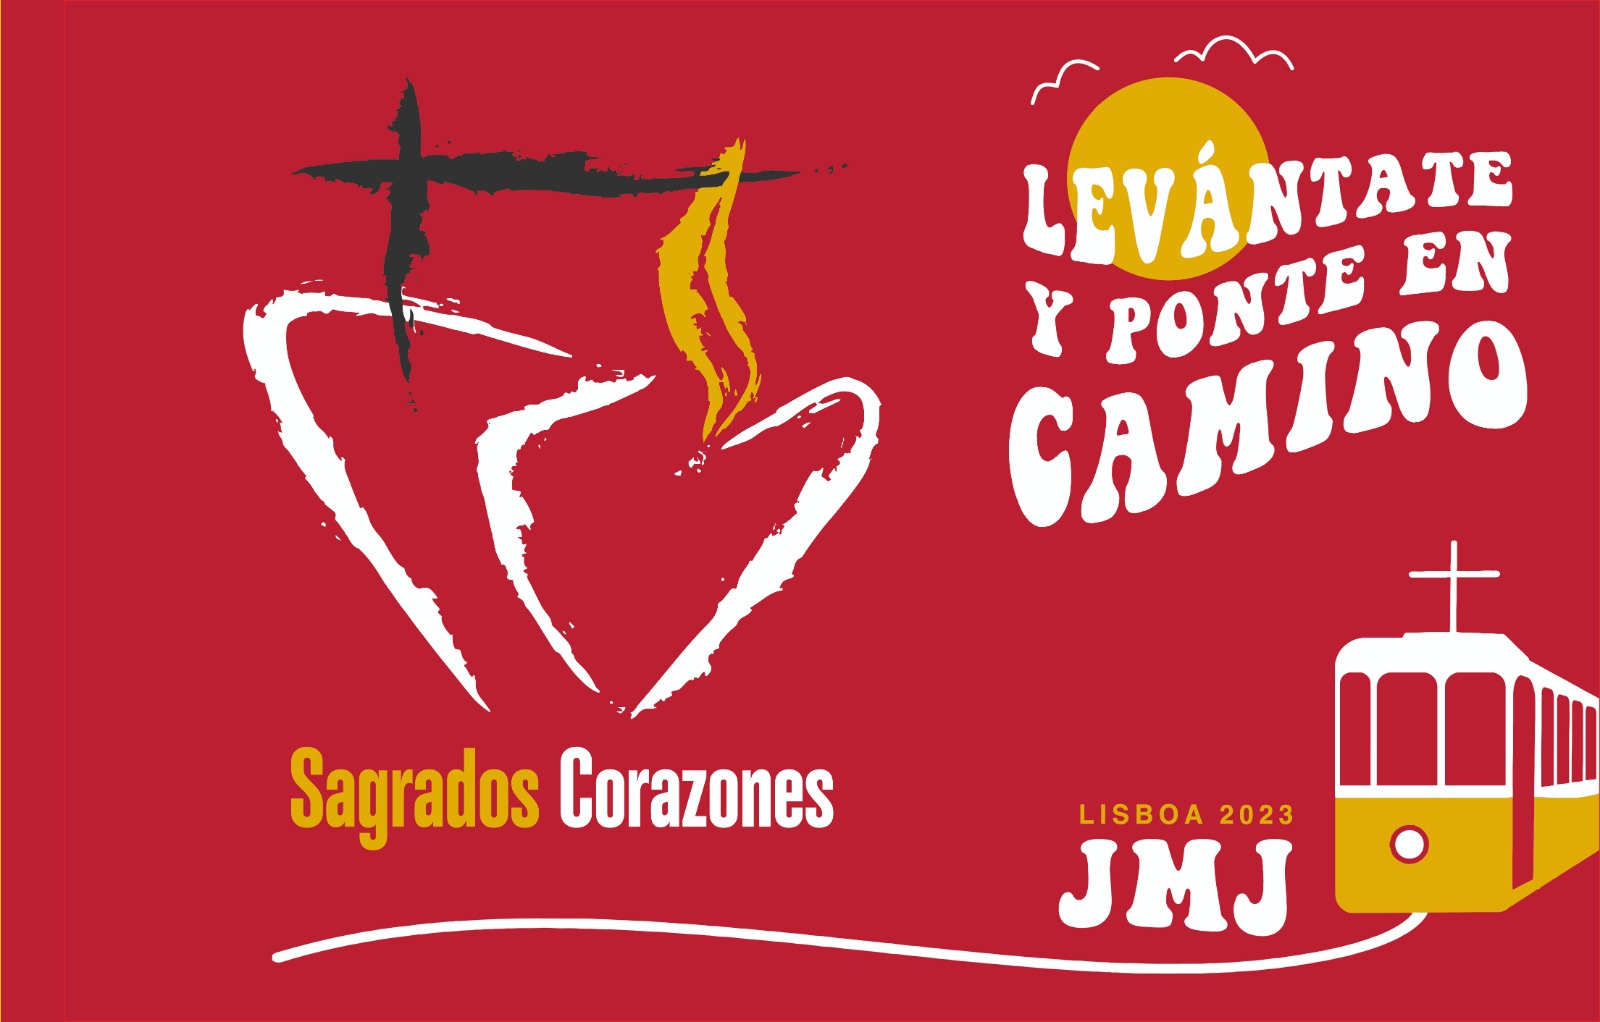 Bandera SS.CC. para la JMJ Lisboa 2023 con el lema "Levántate y ponte en camino"